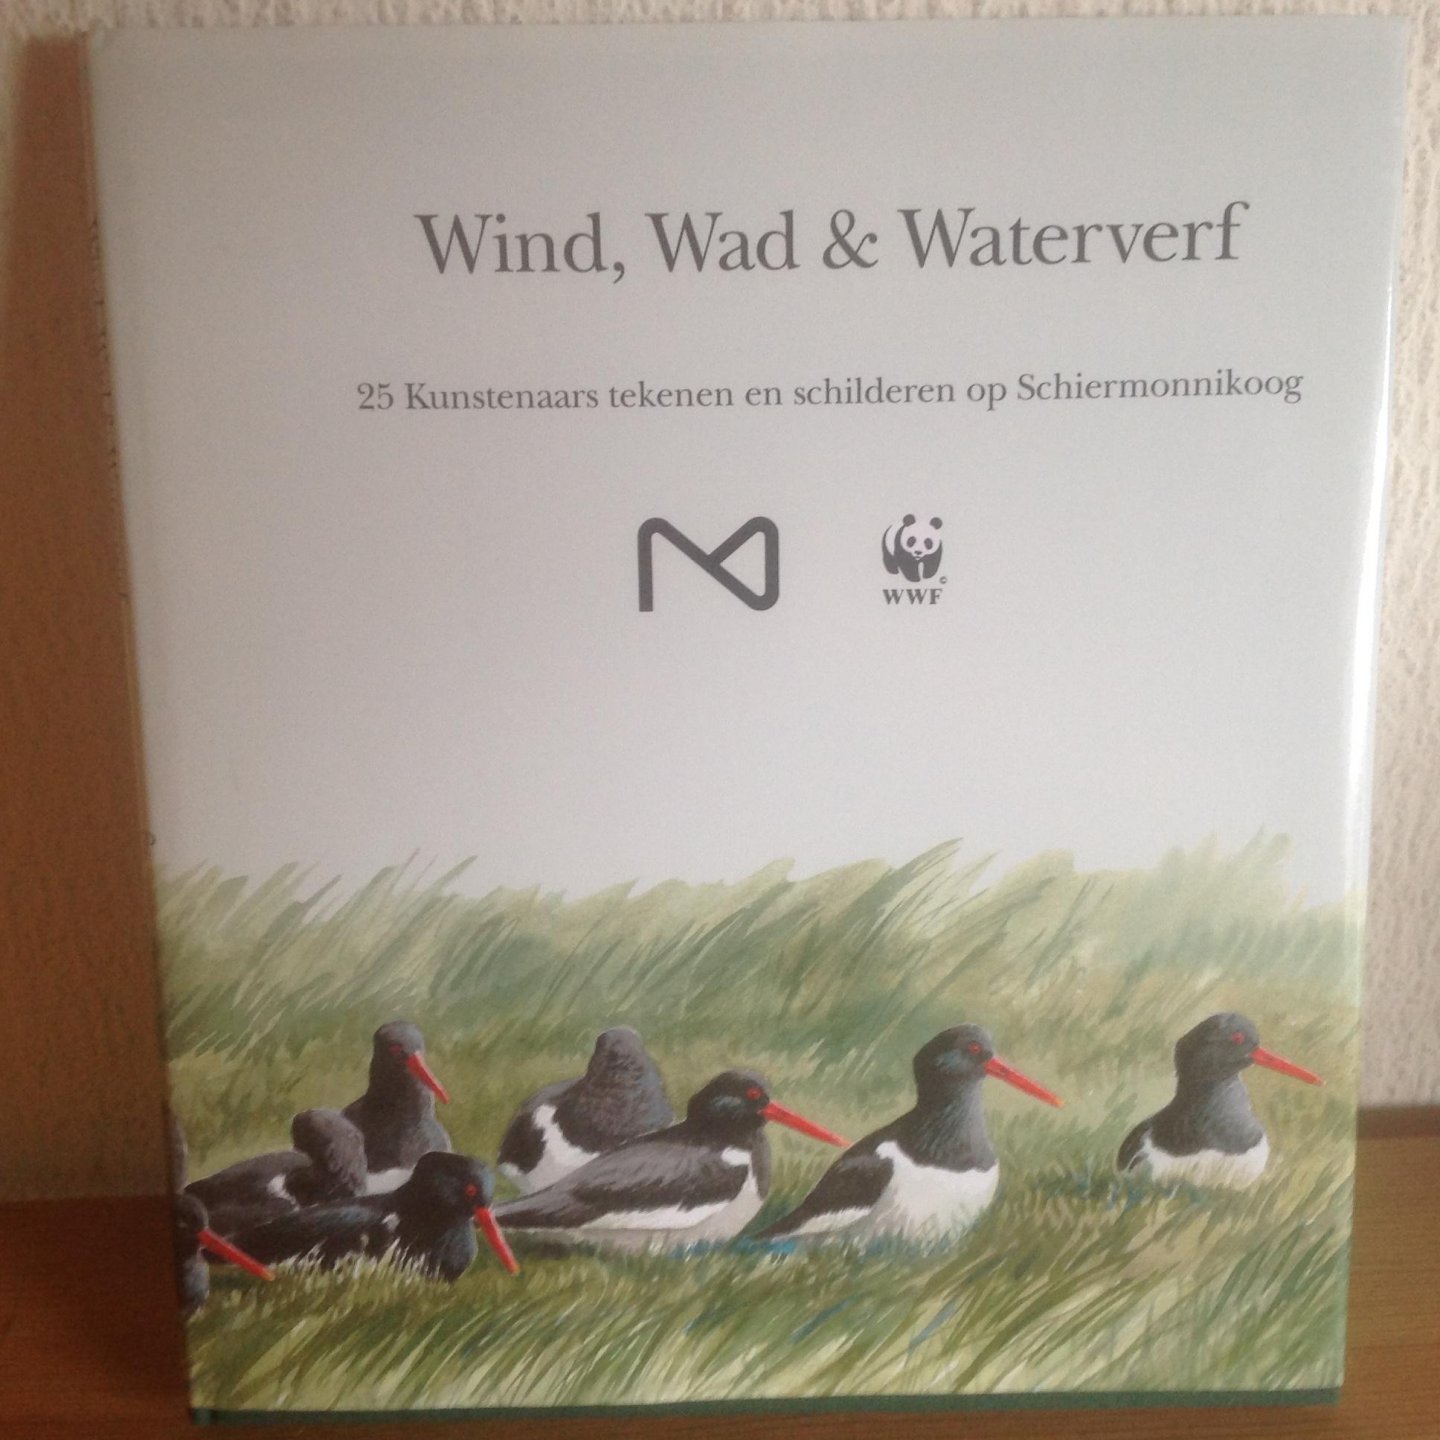  - Wind, wad & waterverf / druk 1